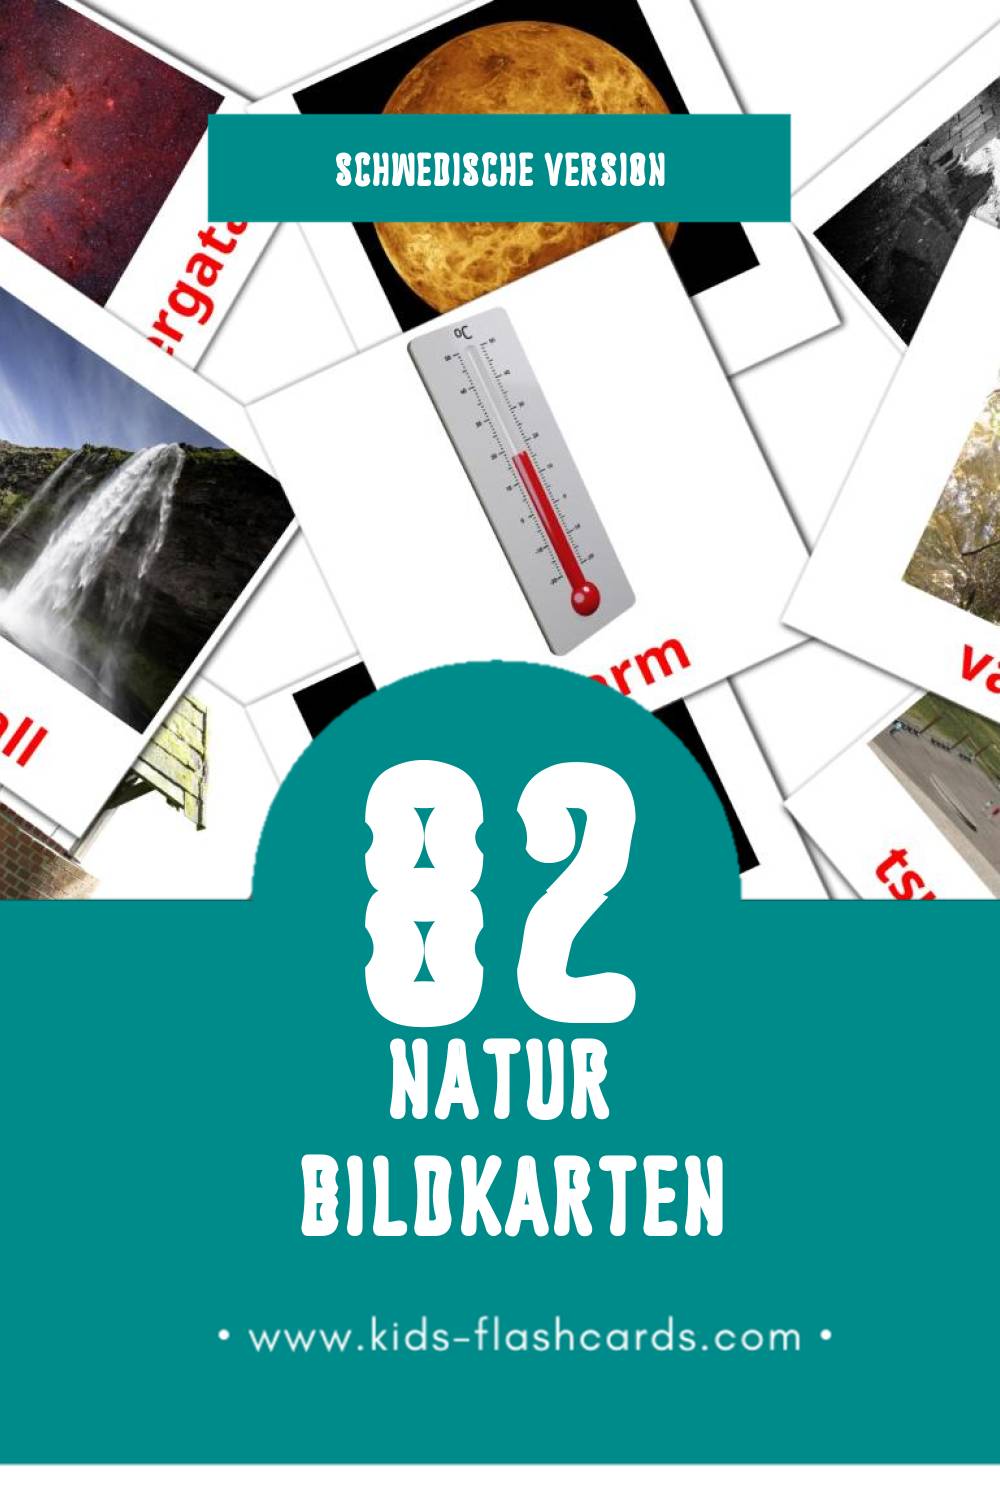 Visual Natur Flashcards für Kleinkinder (82 Karten in Schwedisch)